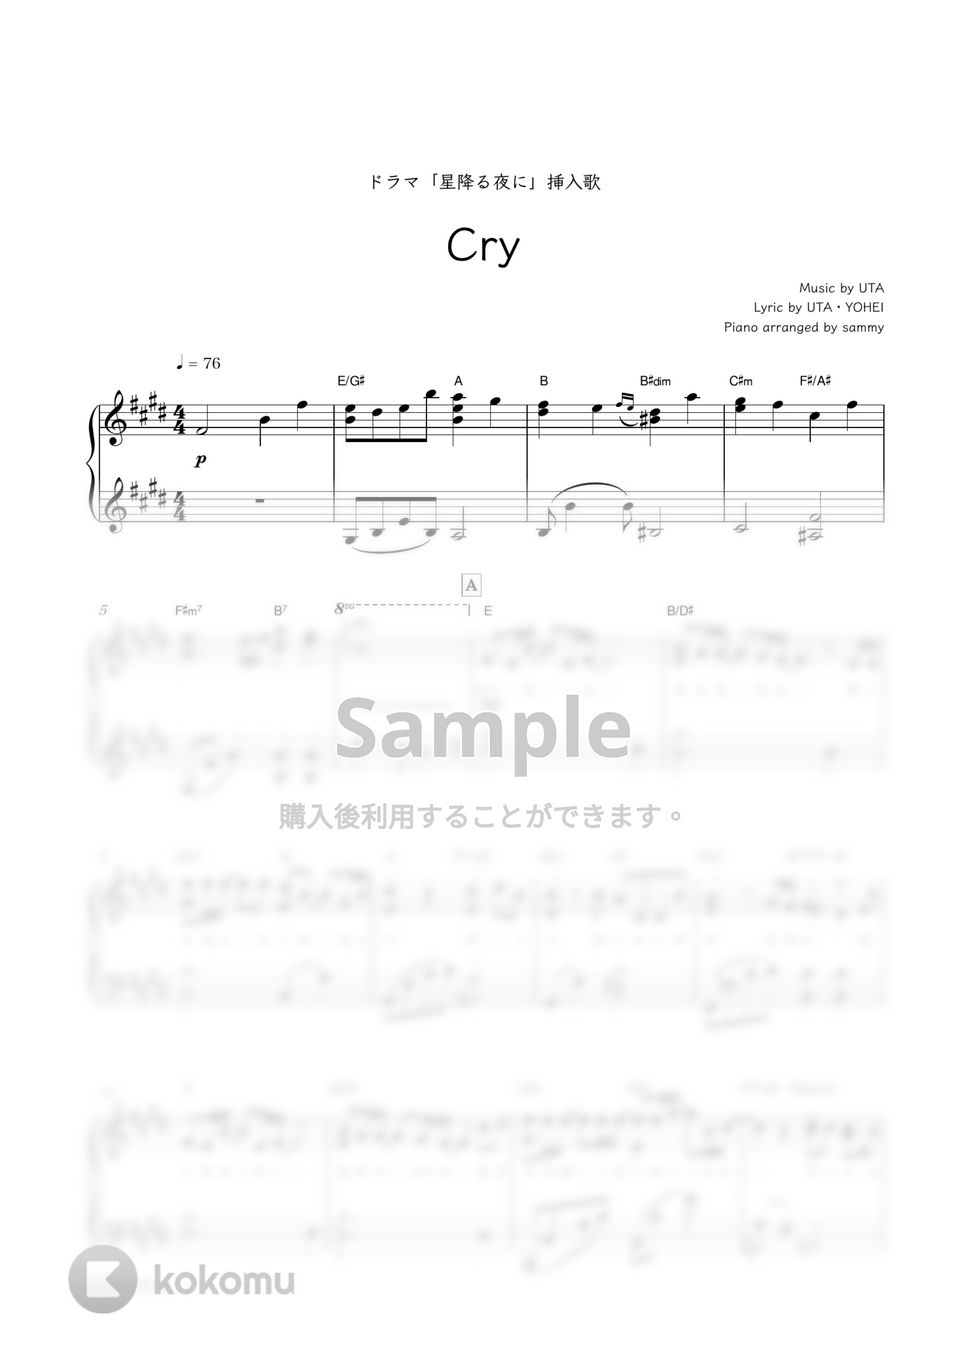 ドヨン(NCT)・ドラマ『星降る夜に』OST - Cry by sammy